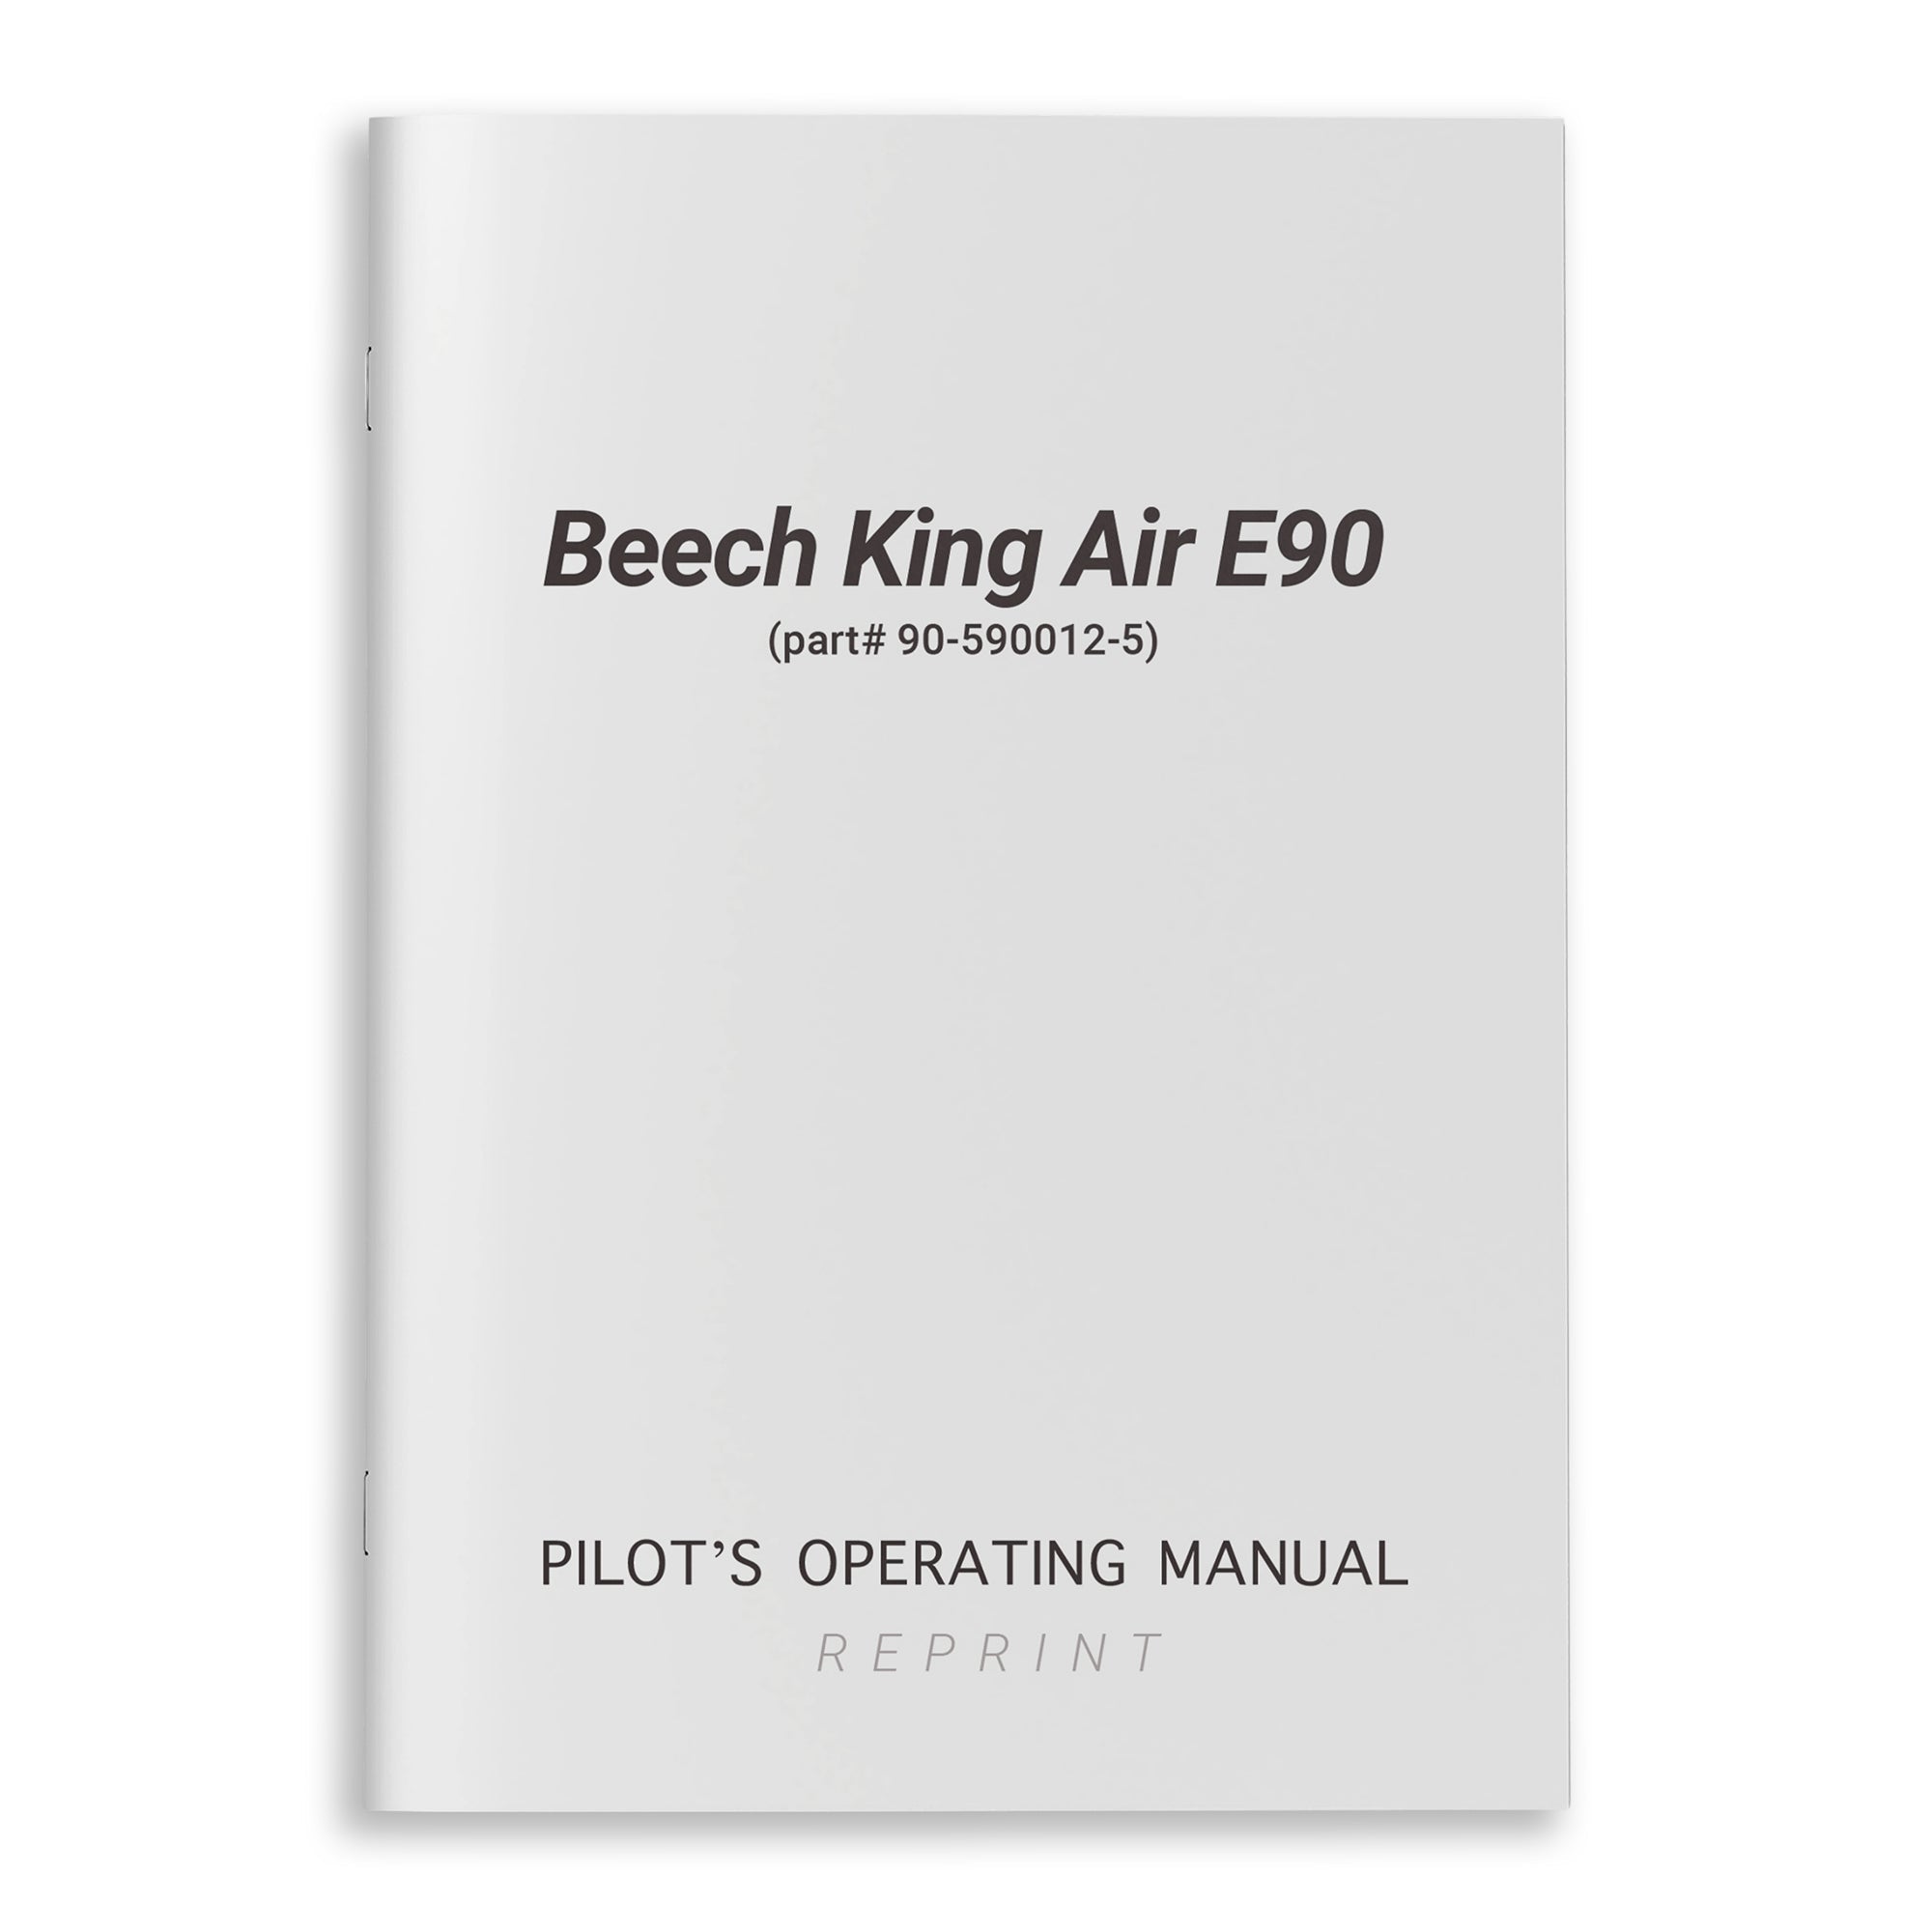 Beech King Air E90 Pilot's Operating Manual (part# 90-590012-5) - PilotMall.com